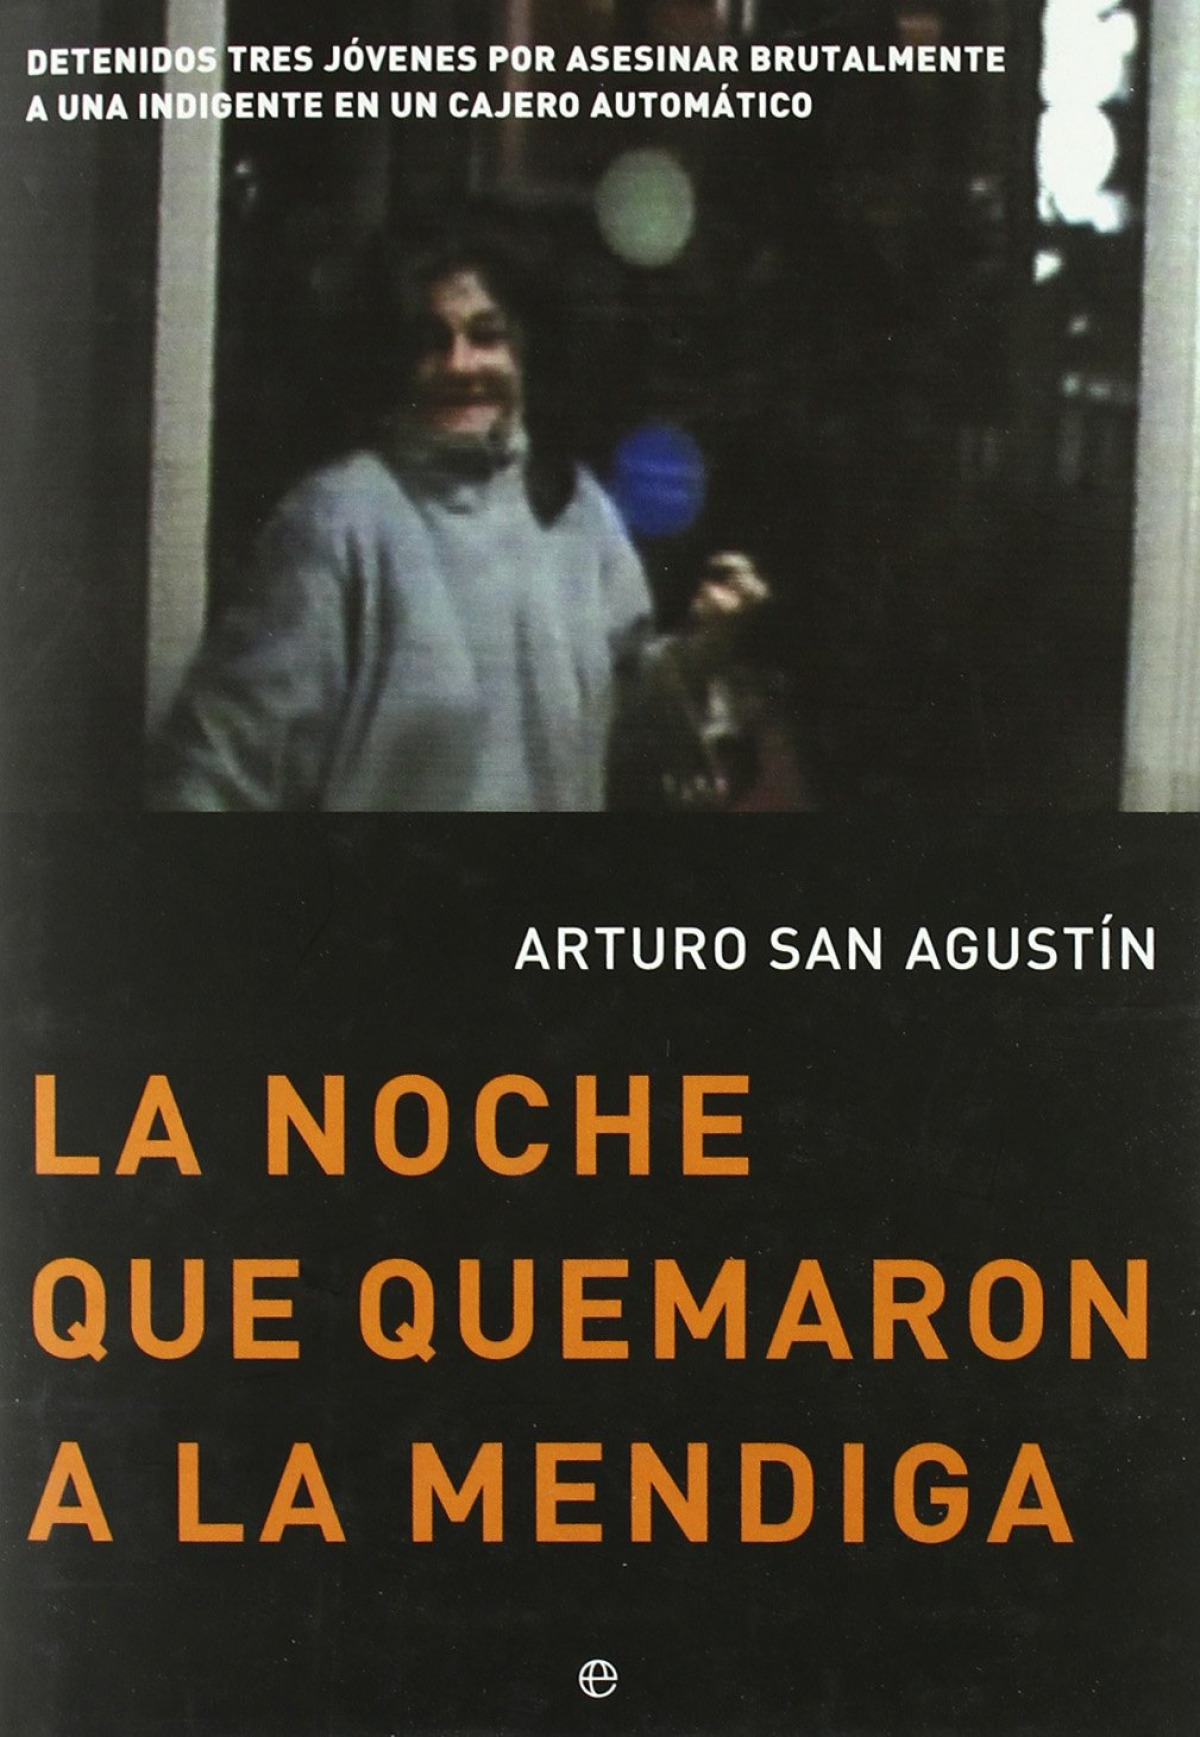 La noche que quemaron a la mendiga - Arturo San Agustín